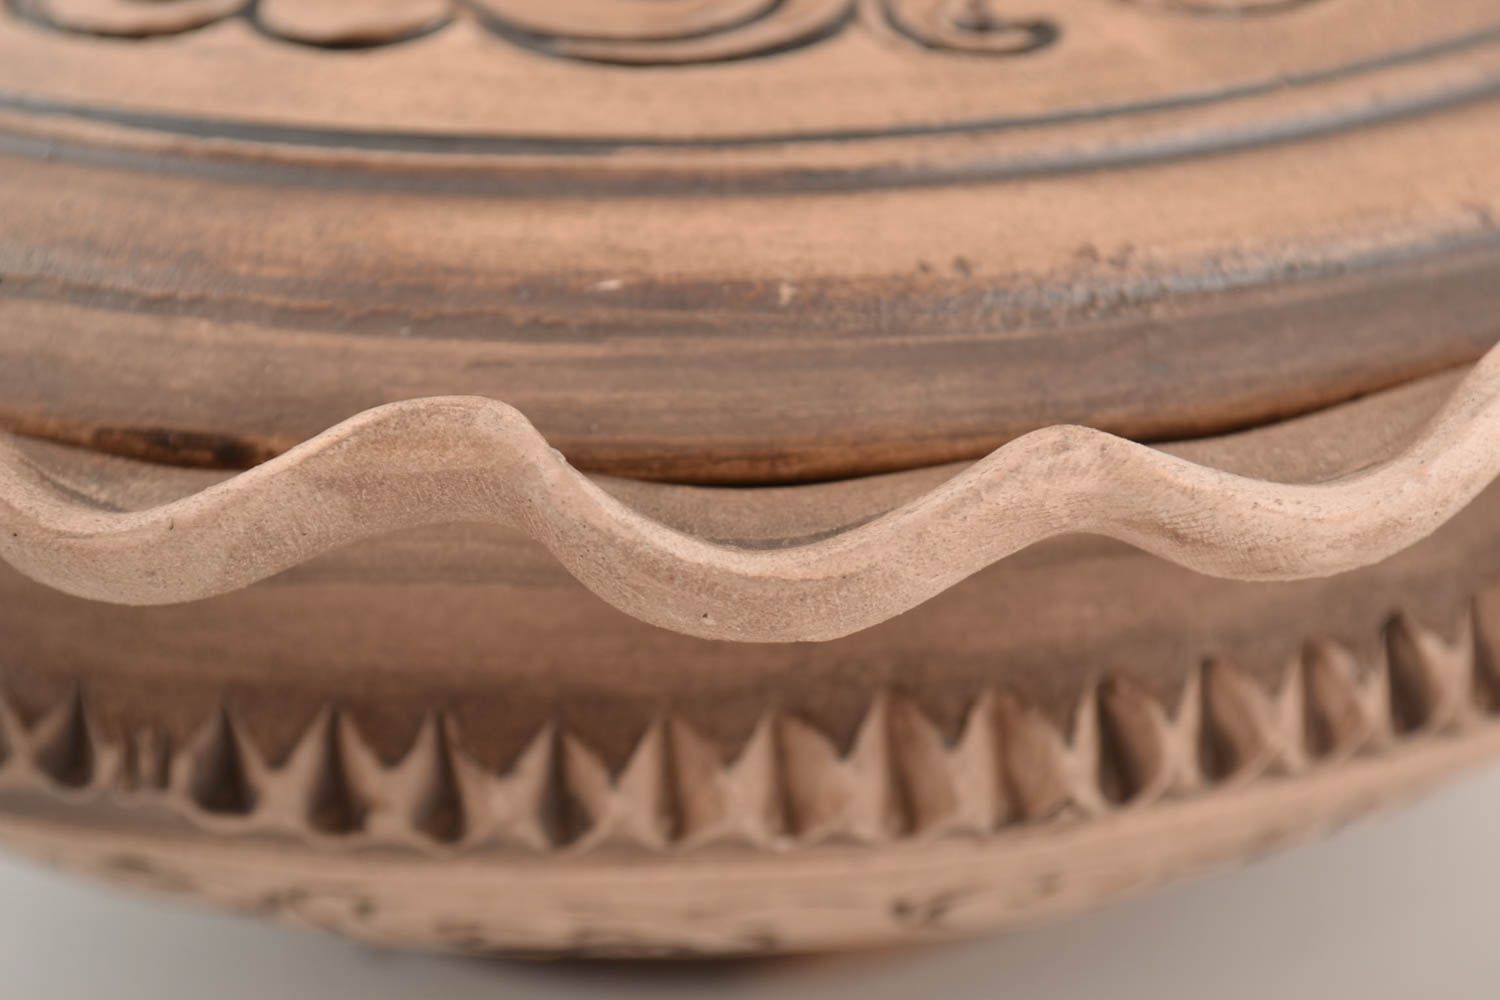 Глиняная миска с крышкой глубокая коричневая 1 литр красивая ручной работы фото 3